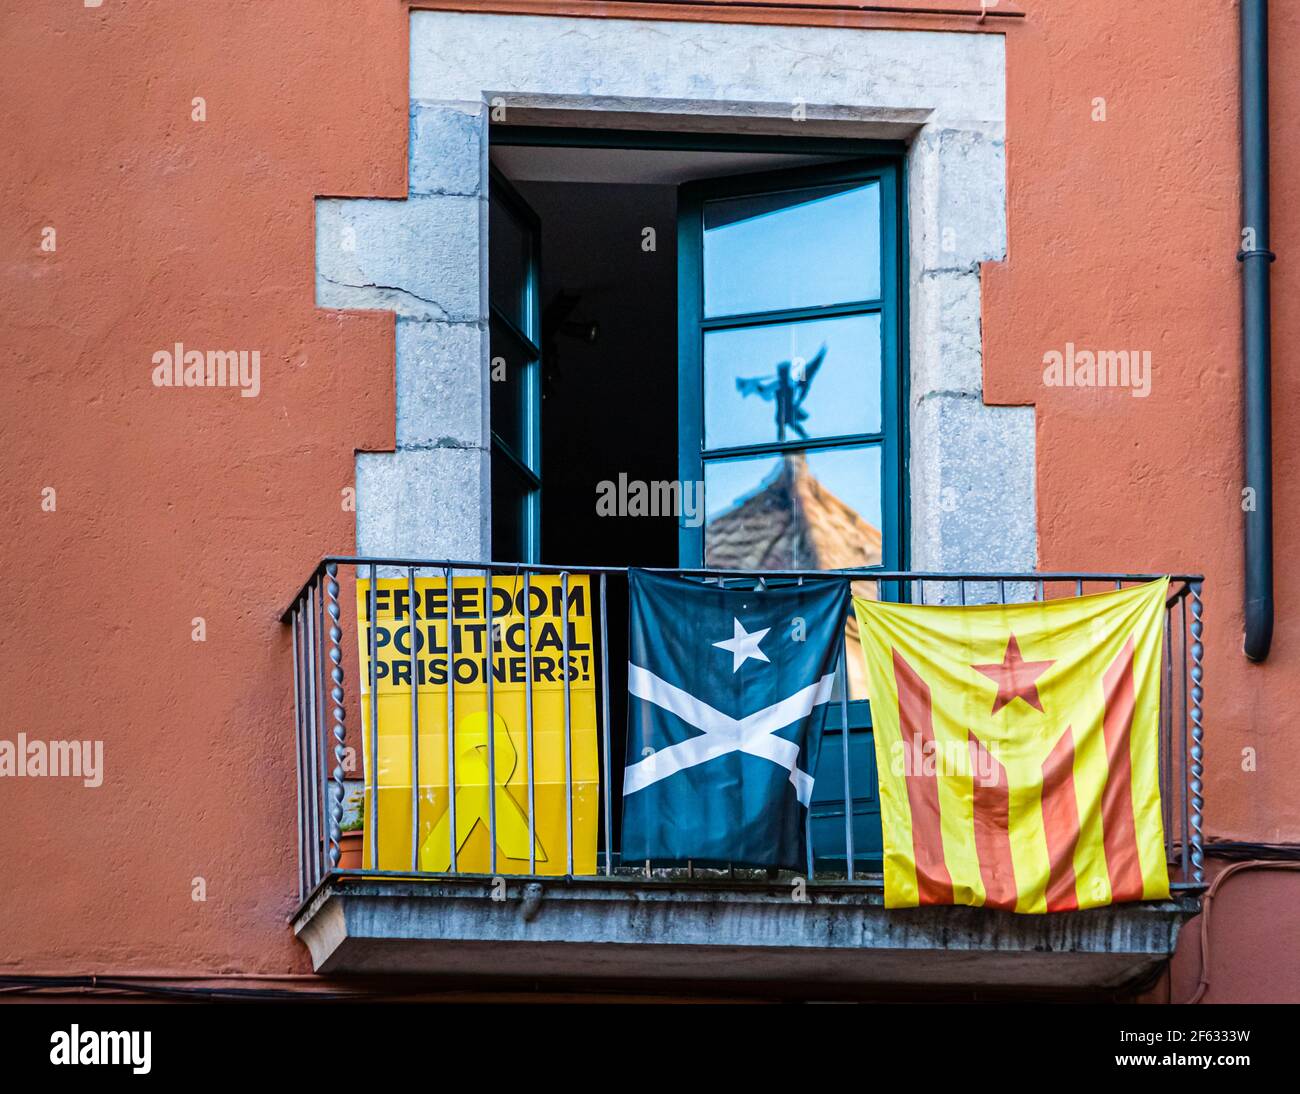 In molti luoghi della Catalogna ci sono proteste contro il governo centrale spagnolo, soprattutto a causa dell'incarcerazione di politici e attivisti catalani. Girona, Catalunya, Spagna Foto Stock